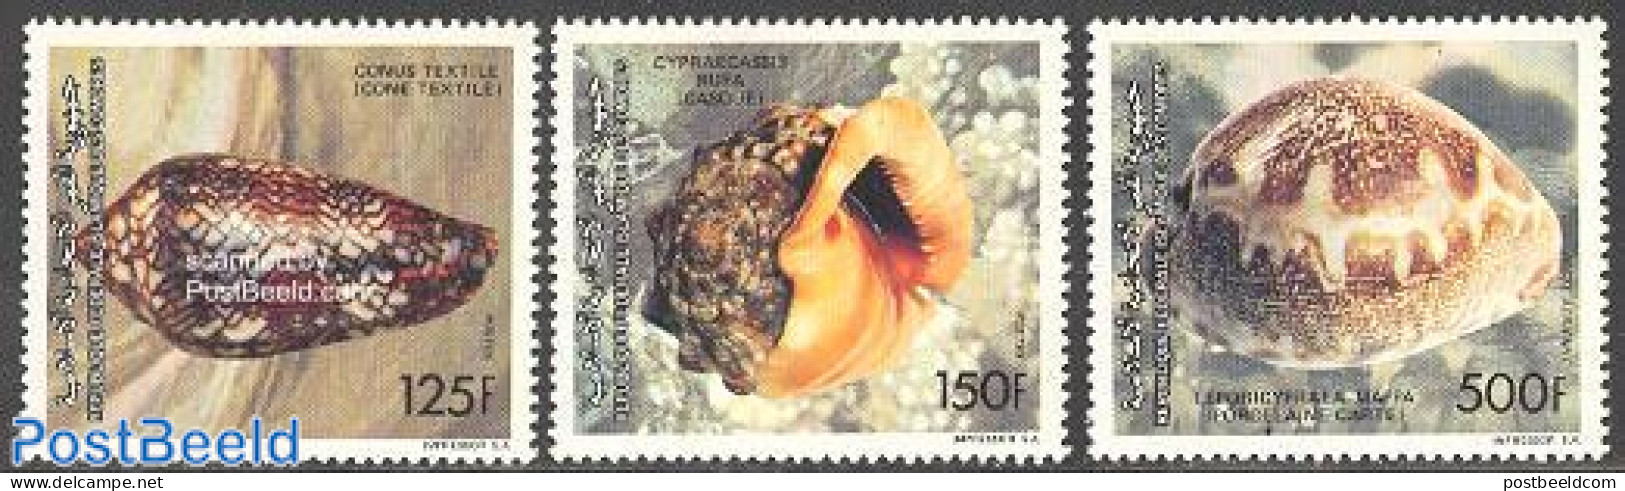 Comoros 1992 Shells 3v, Mint NH, Nature - Shells & Crustaceans - Mundo Aquatico